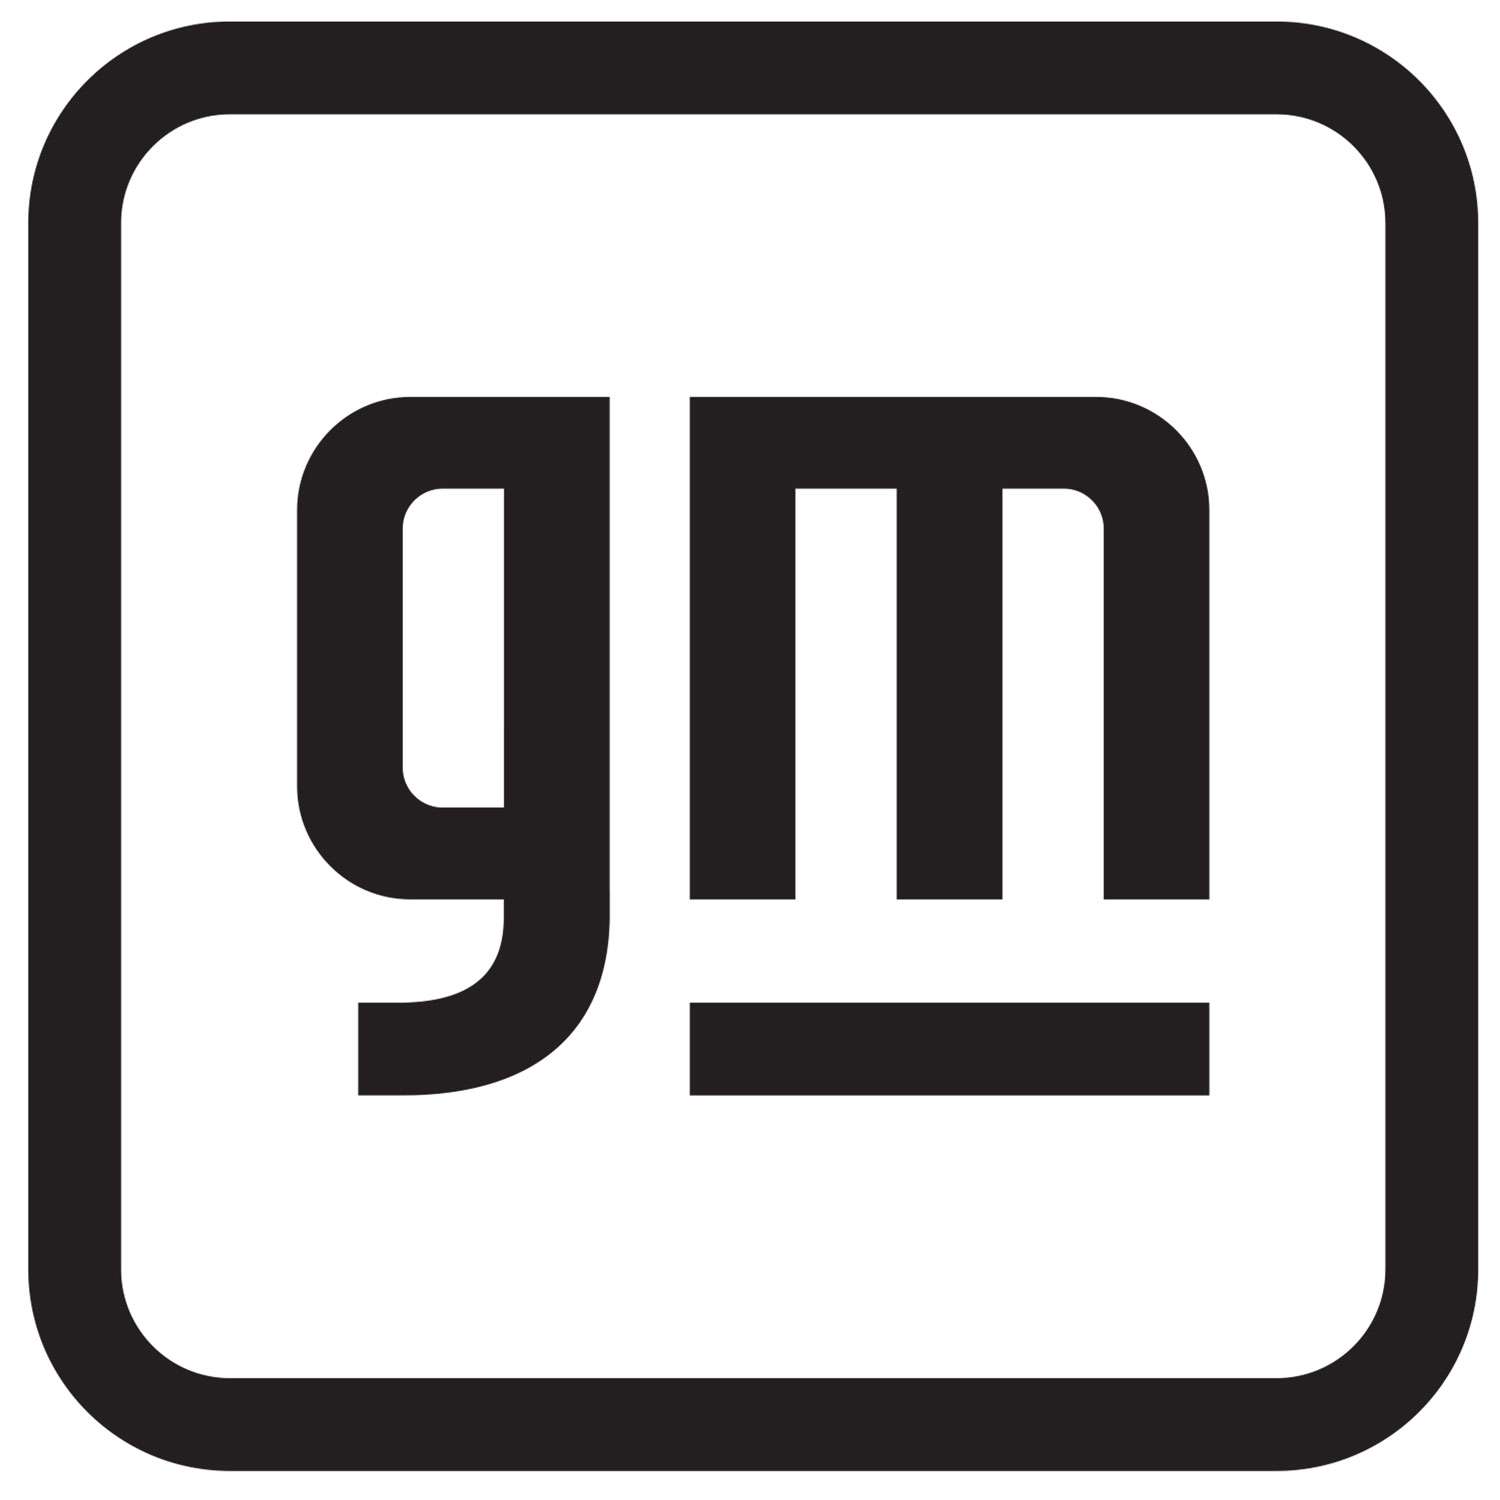 New CMA logo unveiled by ICMAI